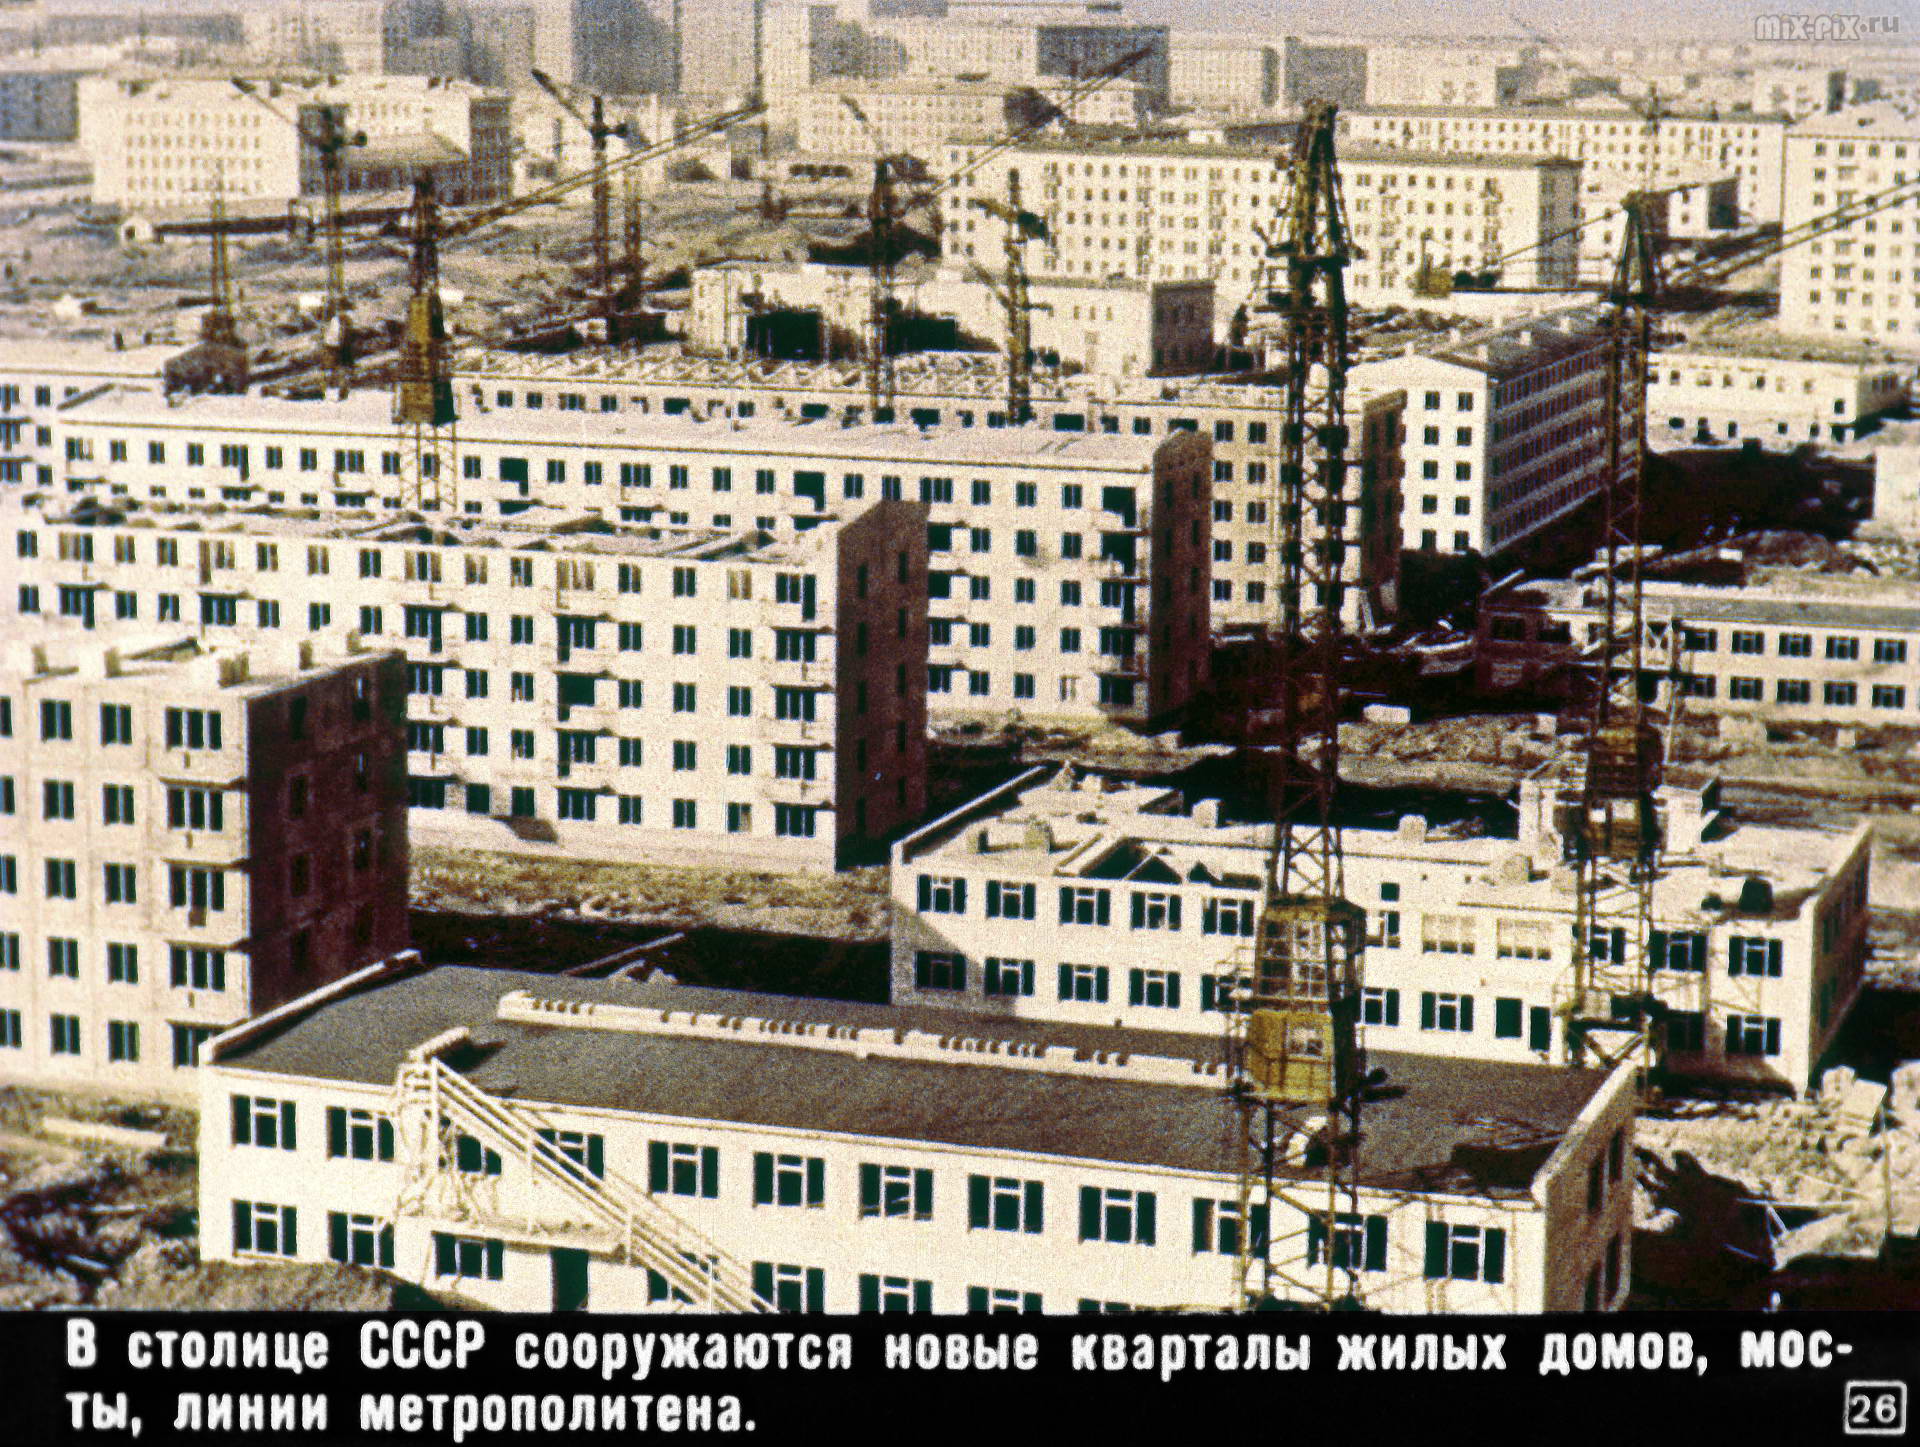 028_GEOGRAFIY-SSSR.jpg